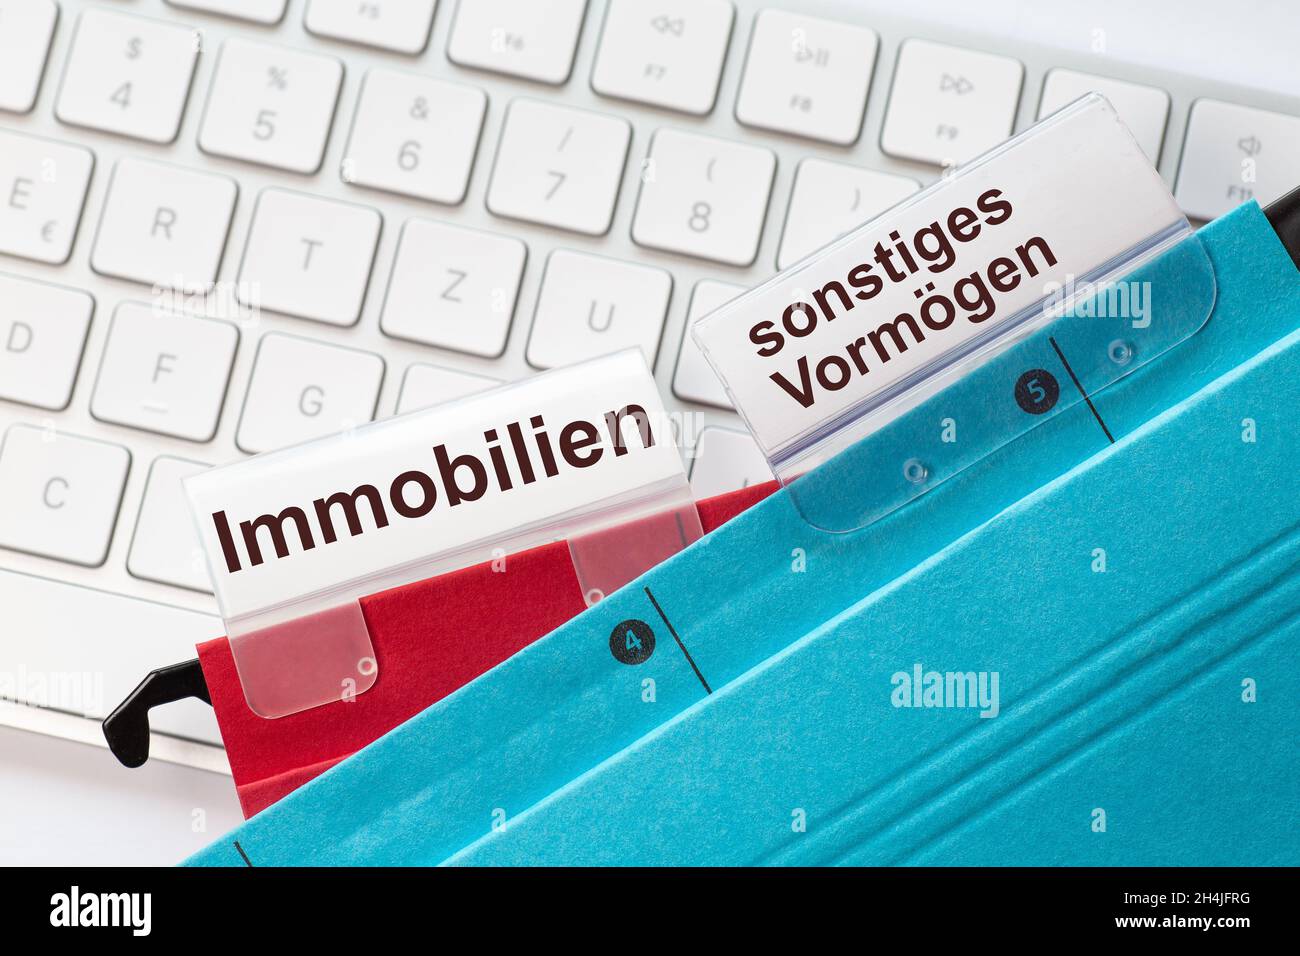 Les mots allemands de l'immobilier et d'autres actifs peuvent être vus sur les étiquettes d'un rouge et bleu dossiers suspendus.Les dossiers suspendus se trouvent sur un ordinateur Banque D'Images